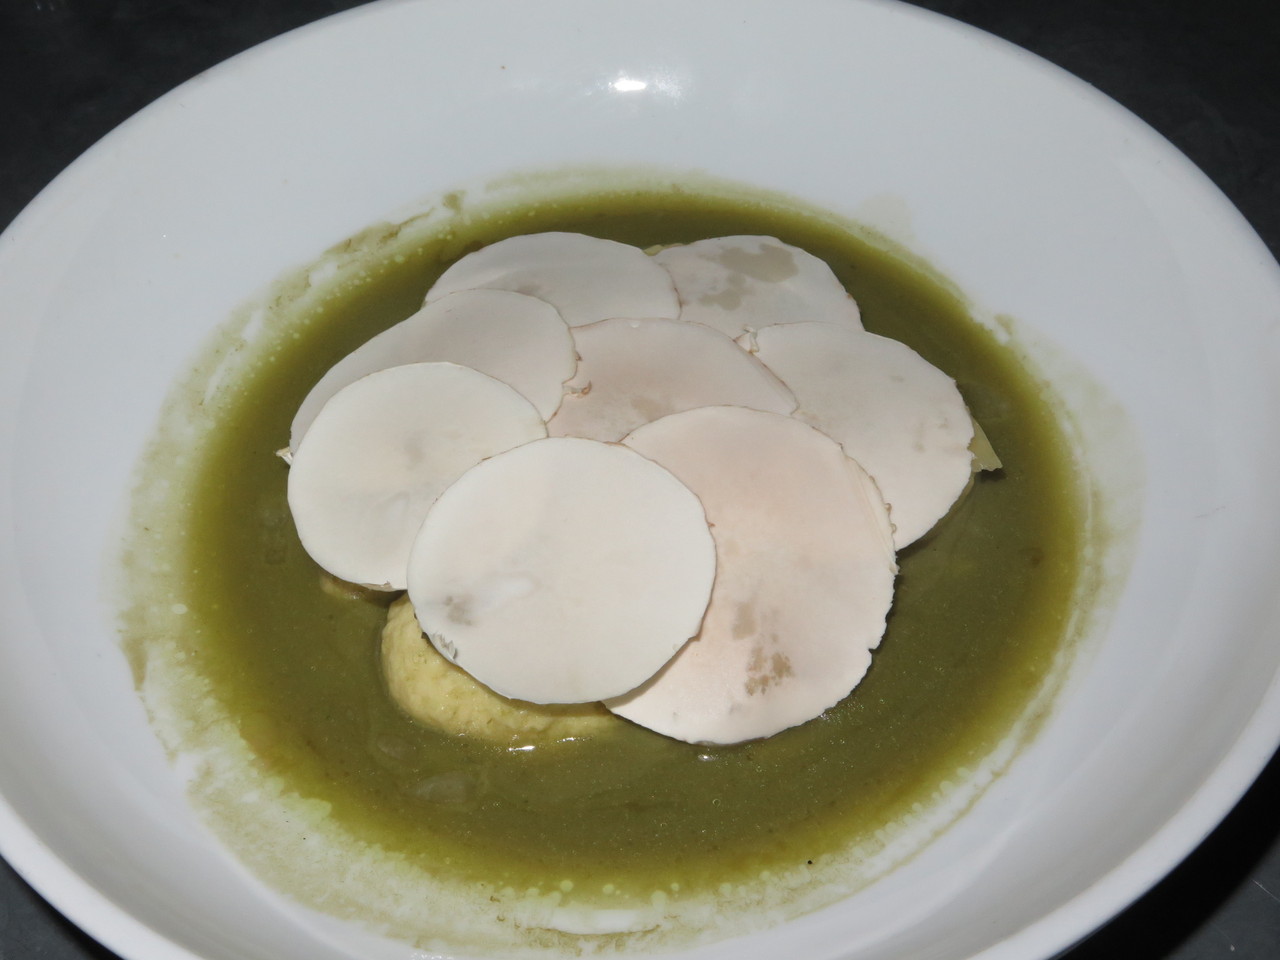 Ricotta dumplings with mushrooms and pecorino sardo